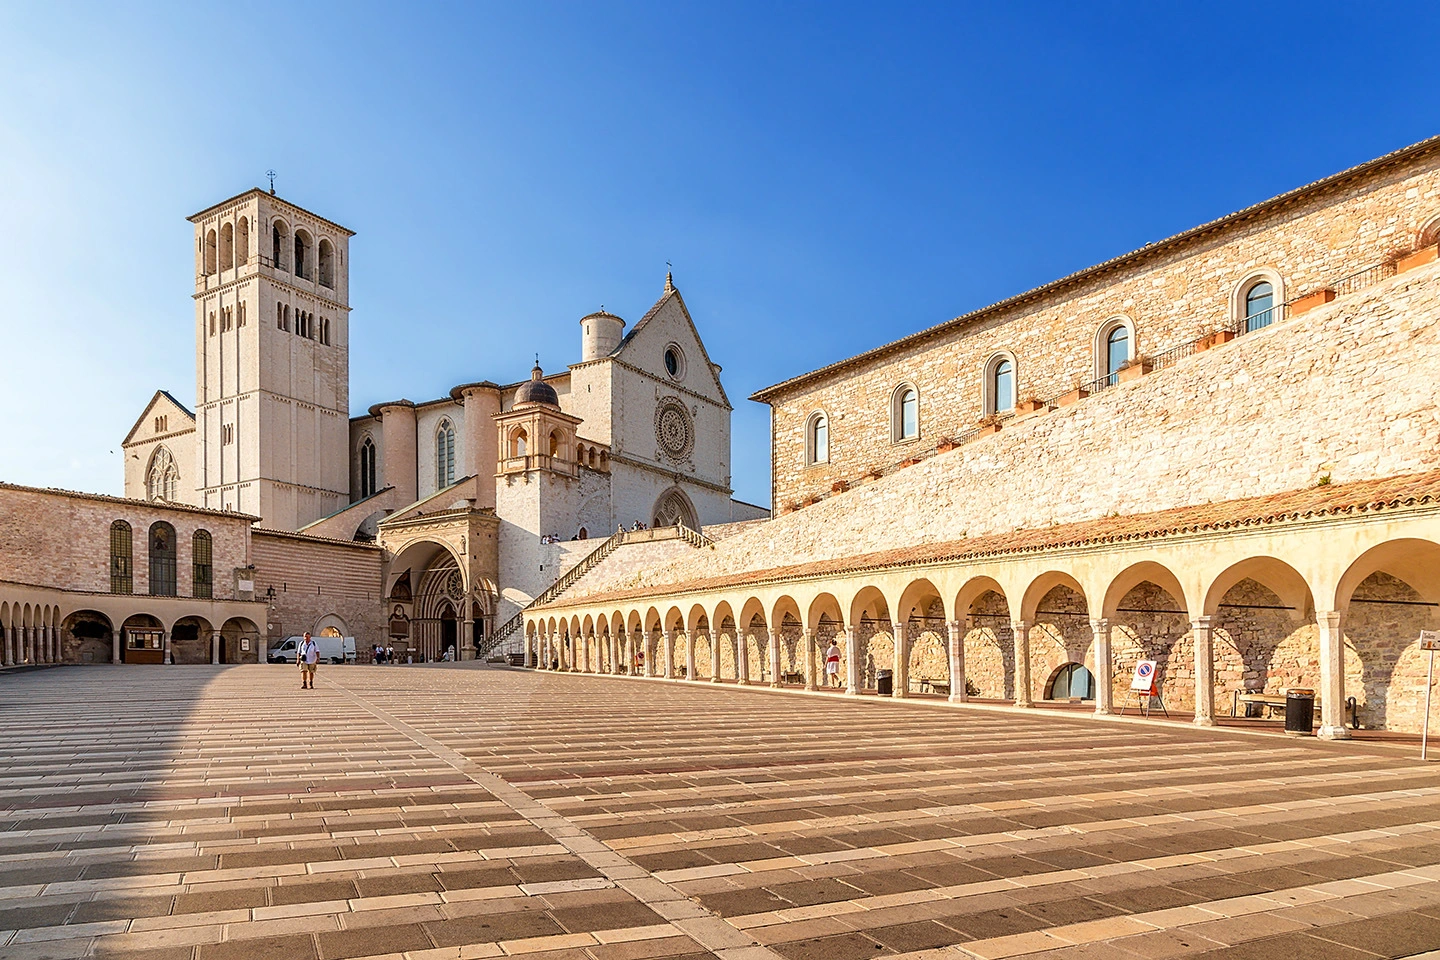 Vacanza spirituale: Assisi la culla della spiritualità cristiana